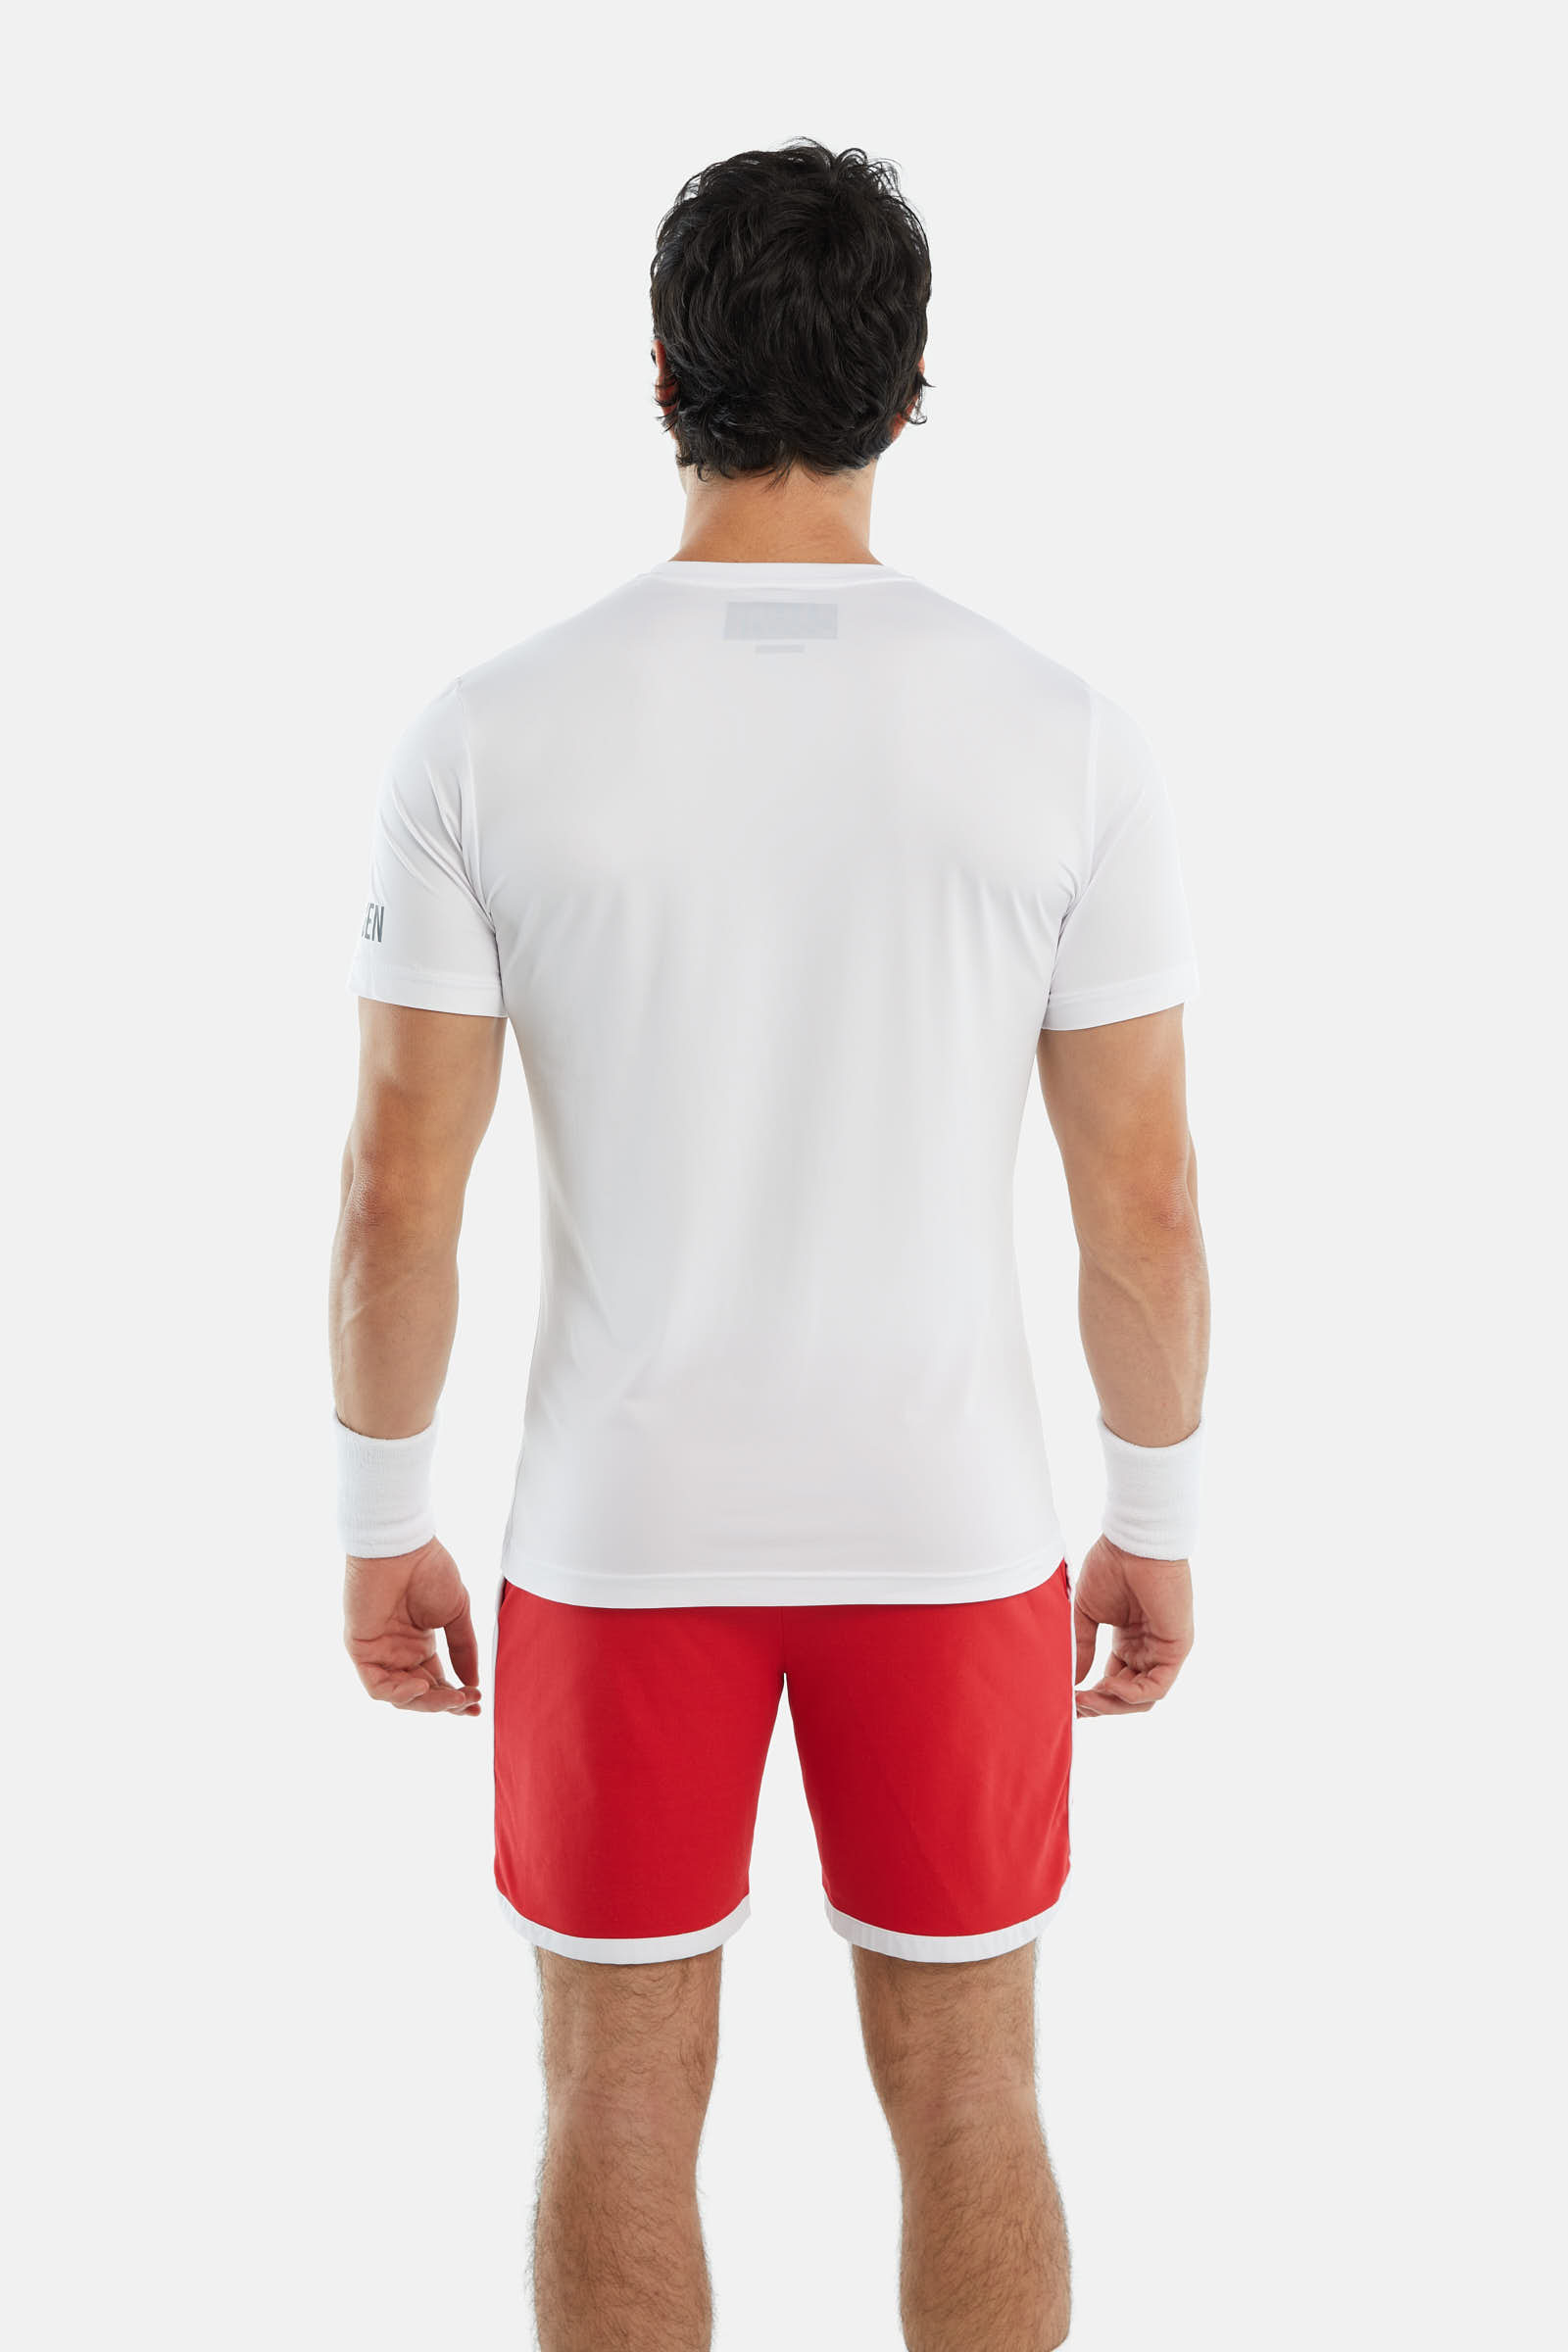 OLYMPIC SKULL TECH T-SHIRT - WHITE - Hydrogen - Luxury Sportwear